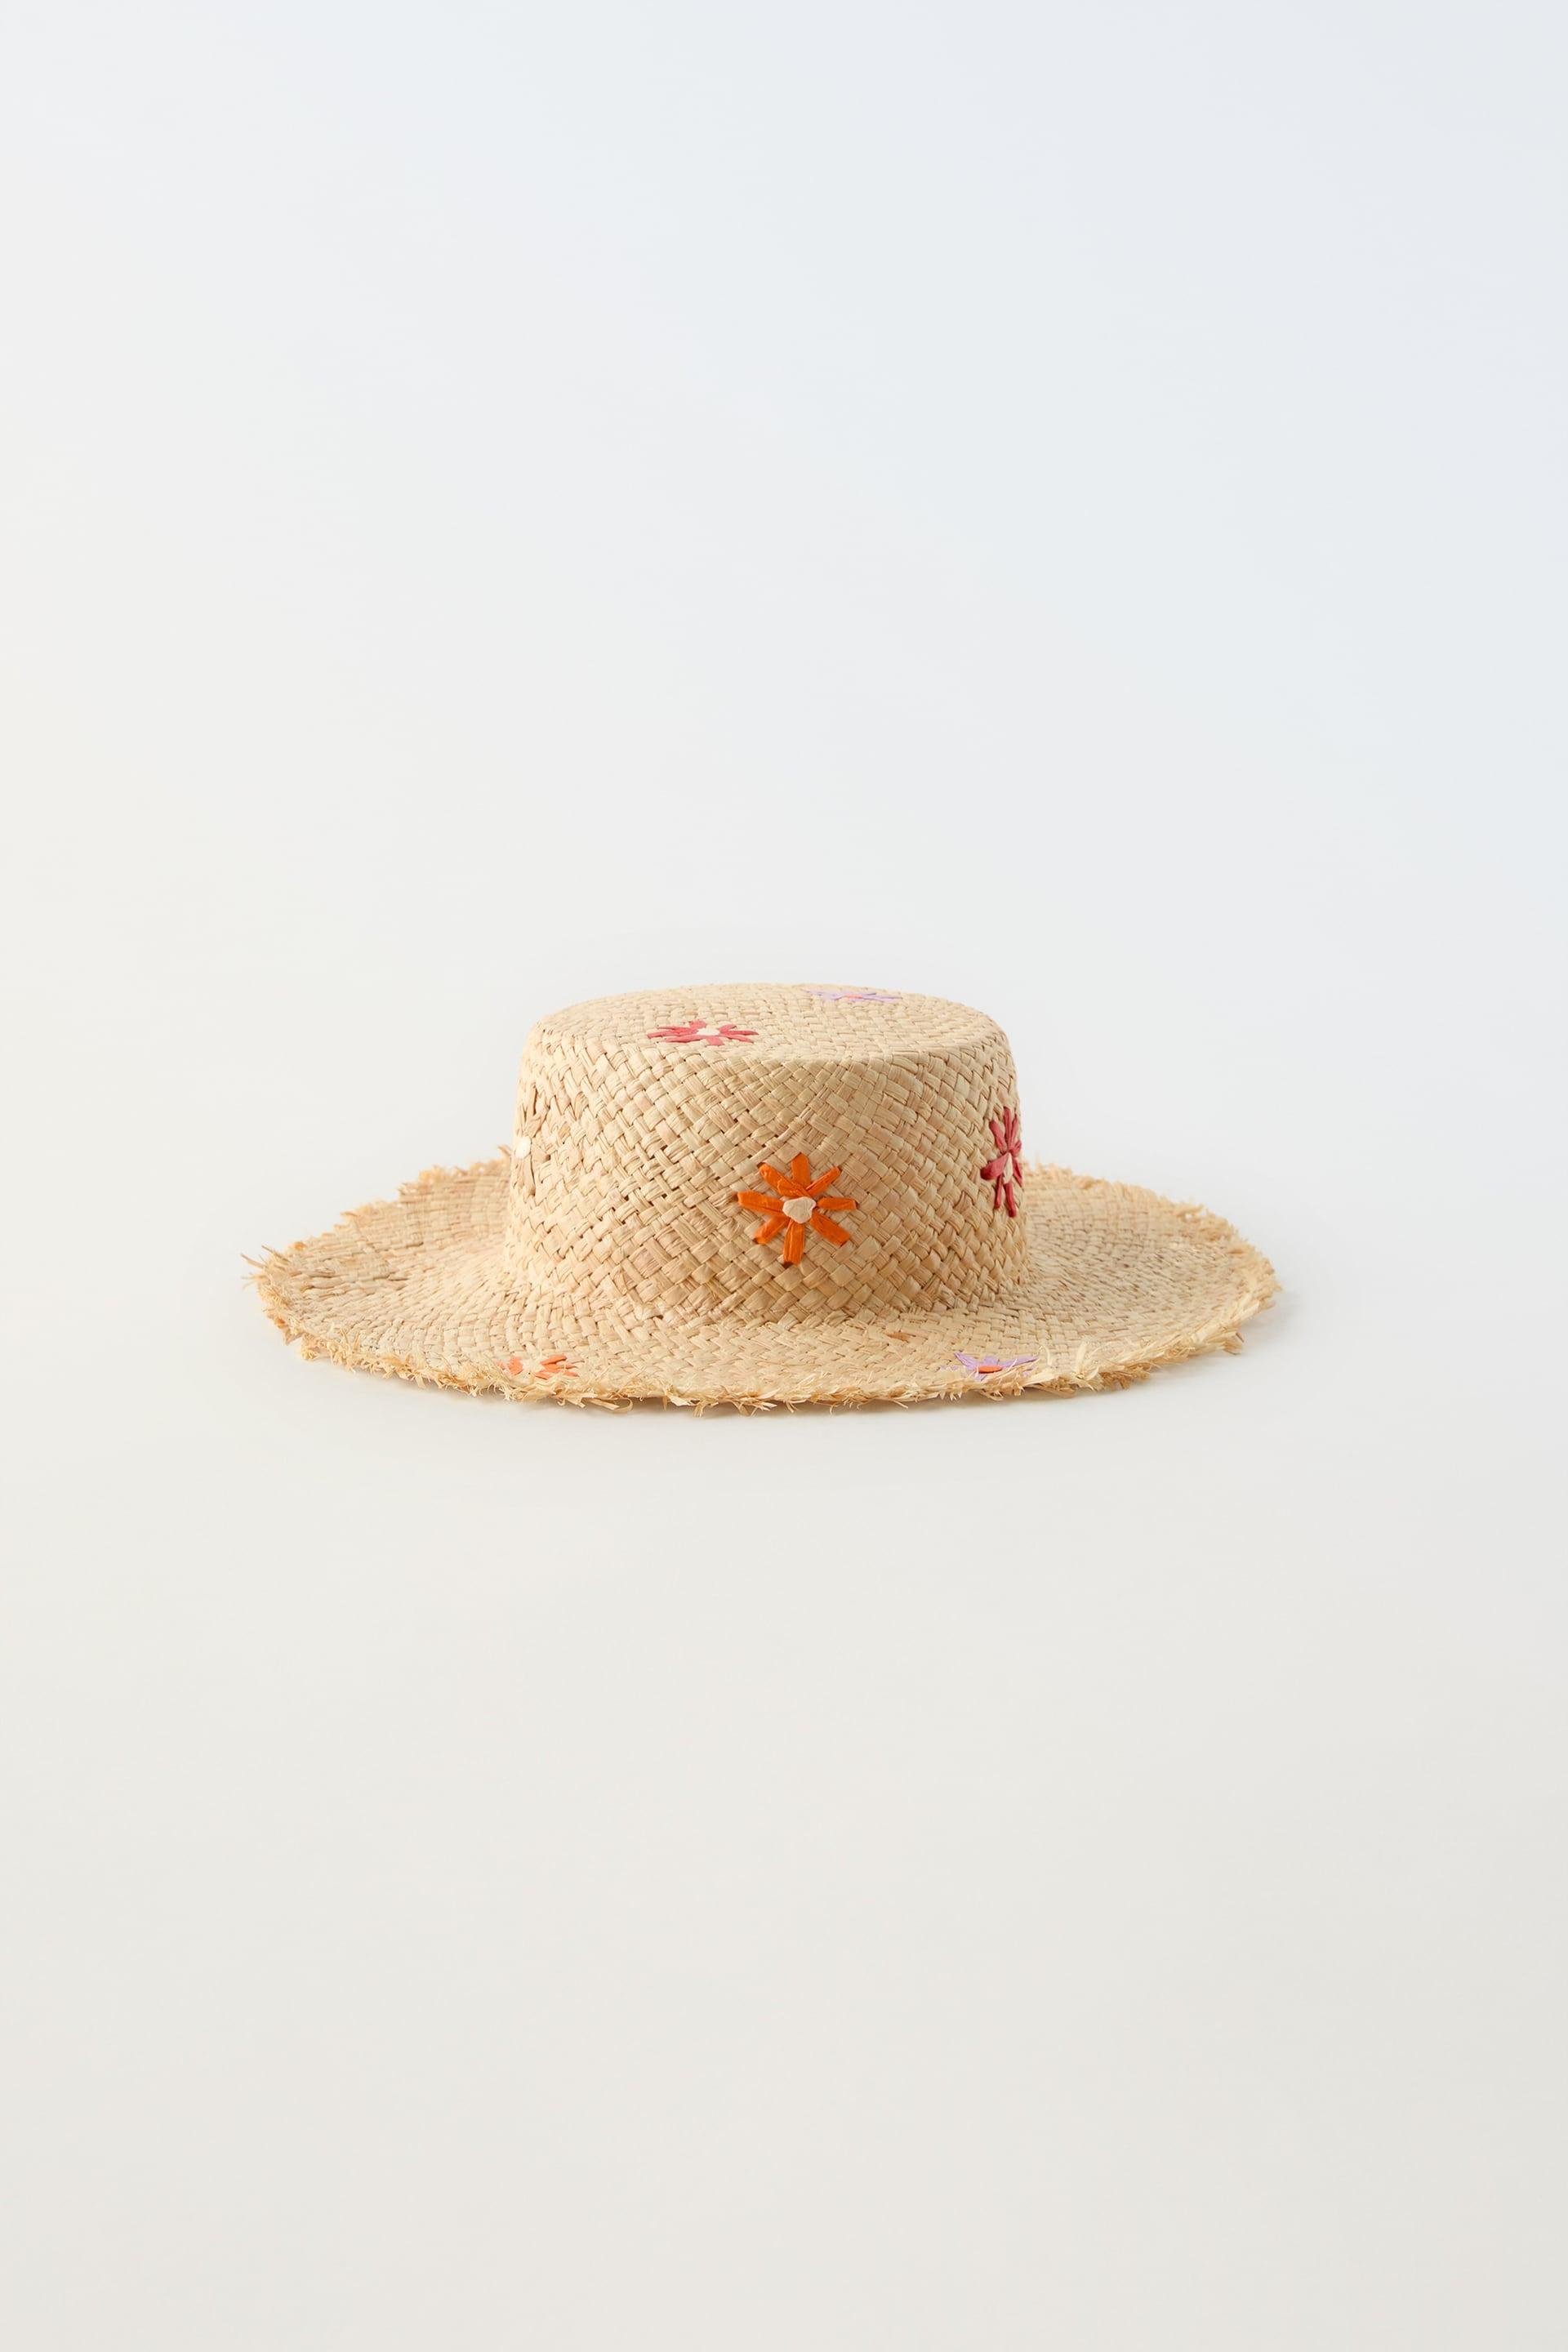 RUSTIC FLOWER HAT by ZARA